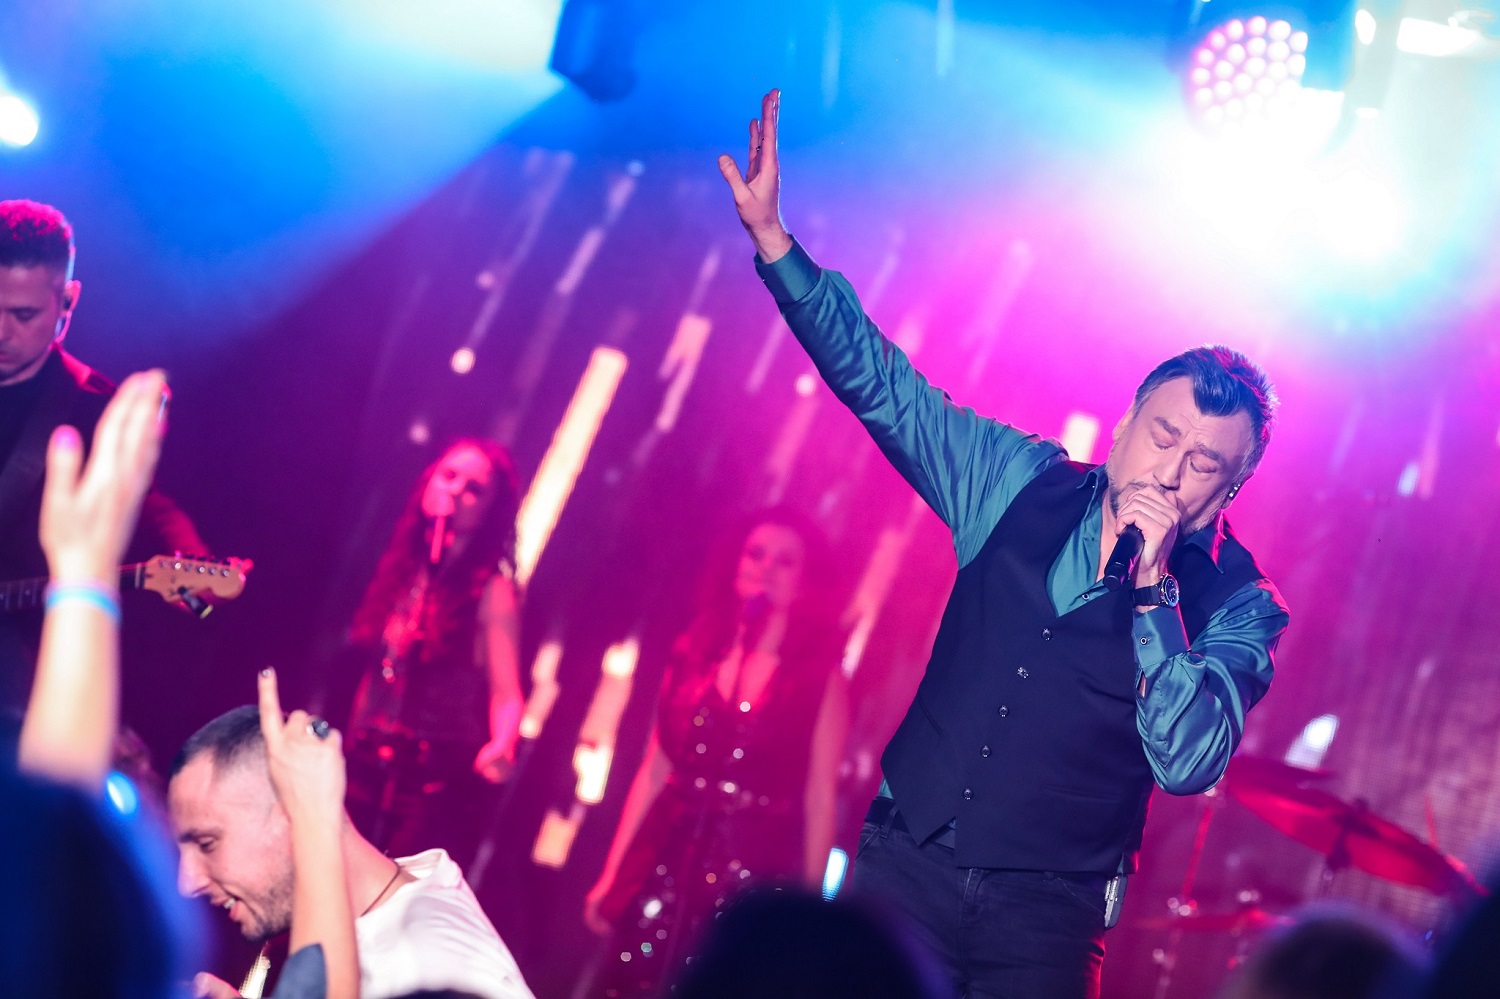 Любо Киров направи премиера на новия си албум „Целуни ме“ и на видеото на „Усеща се сила“ в една вечер